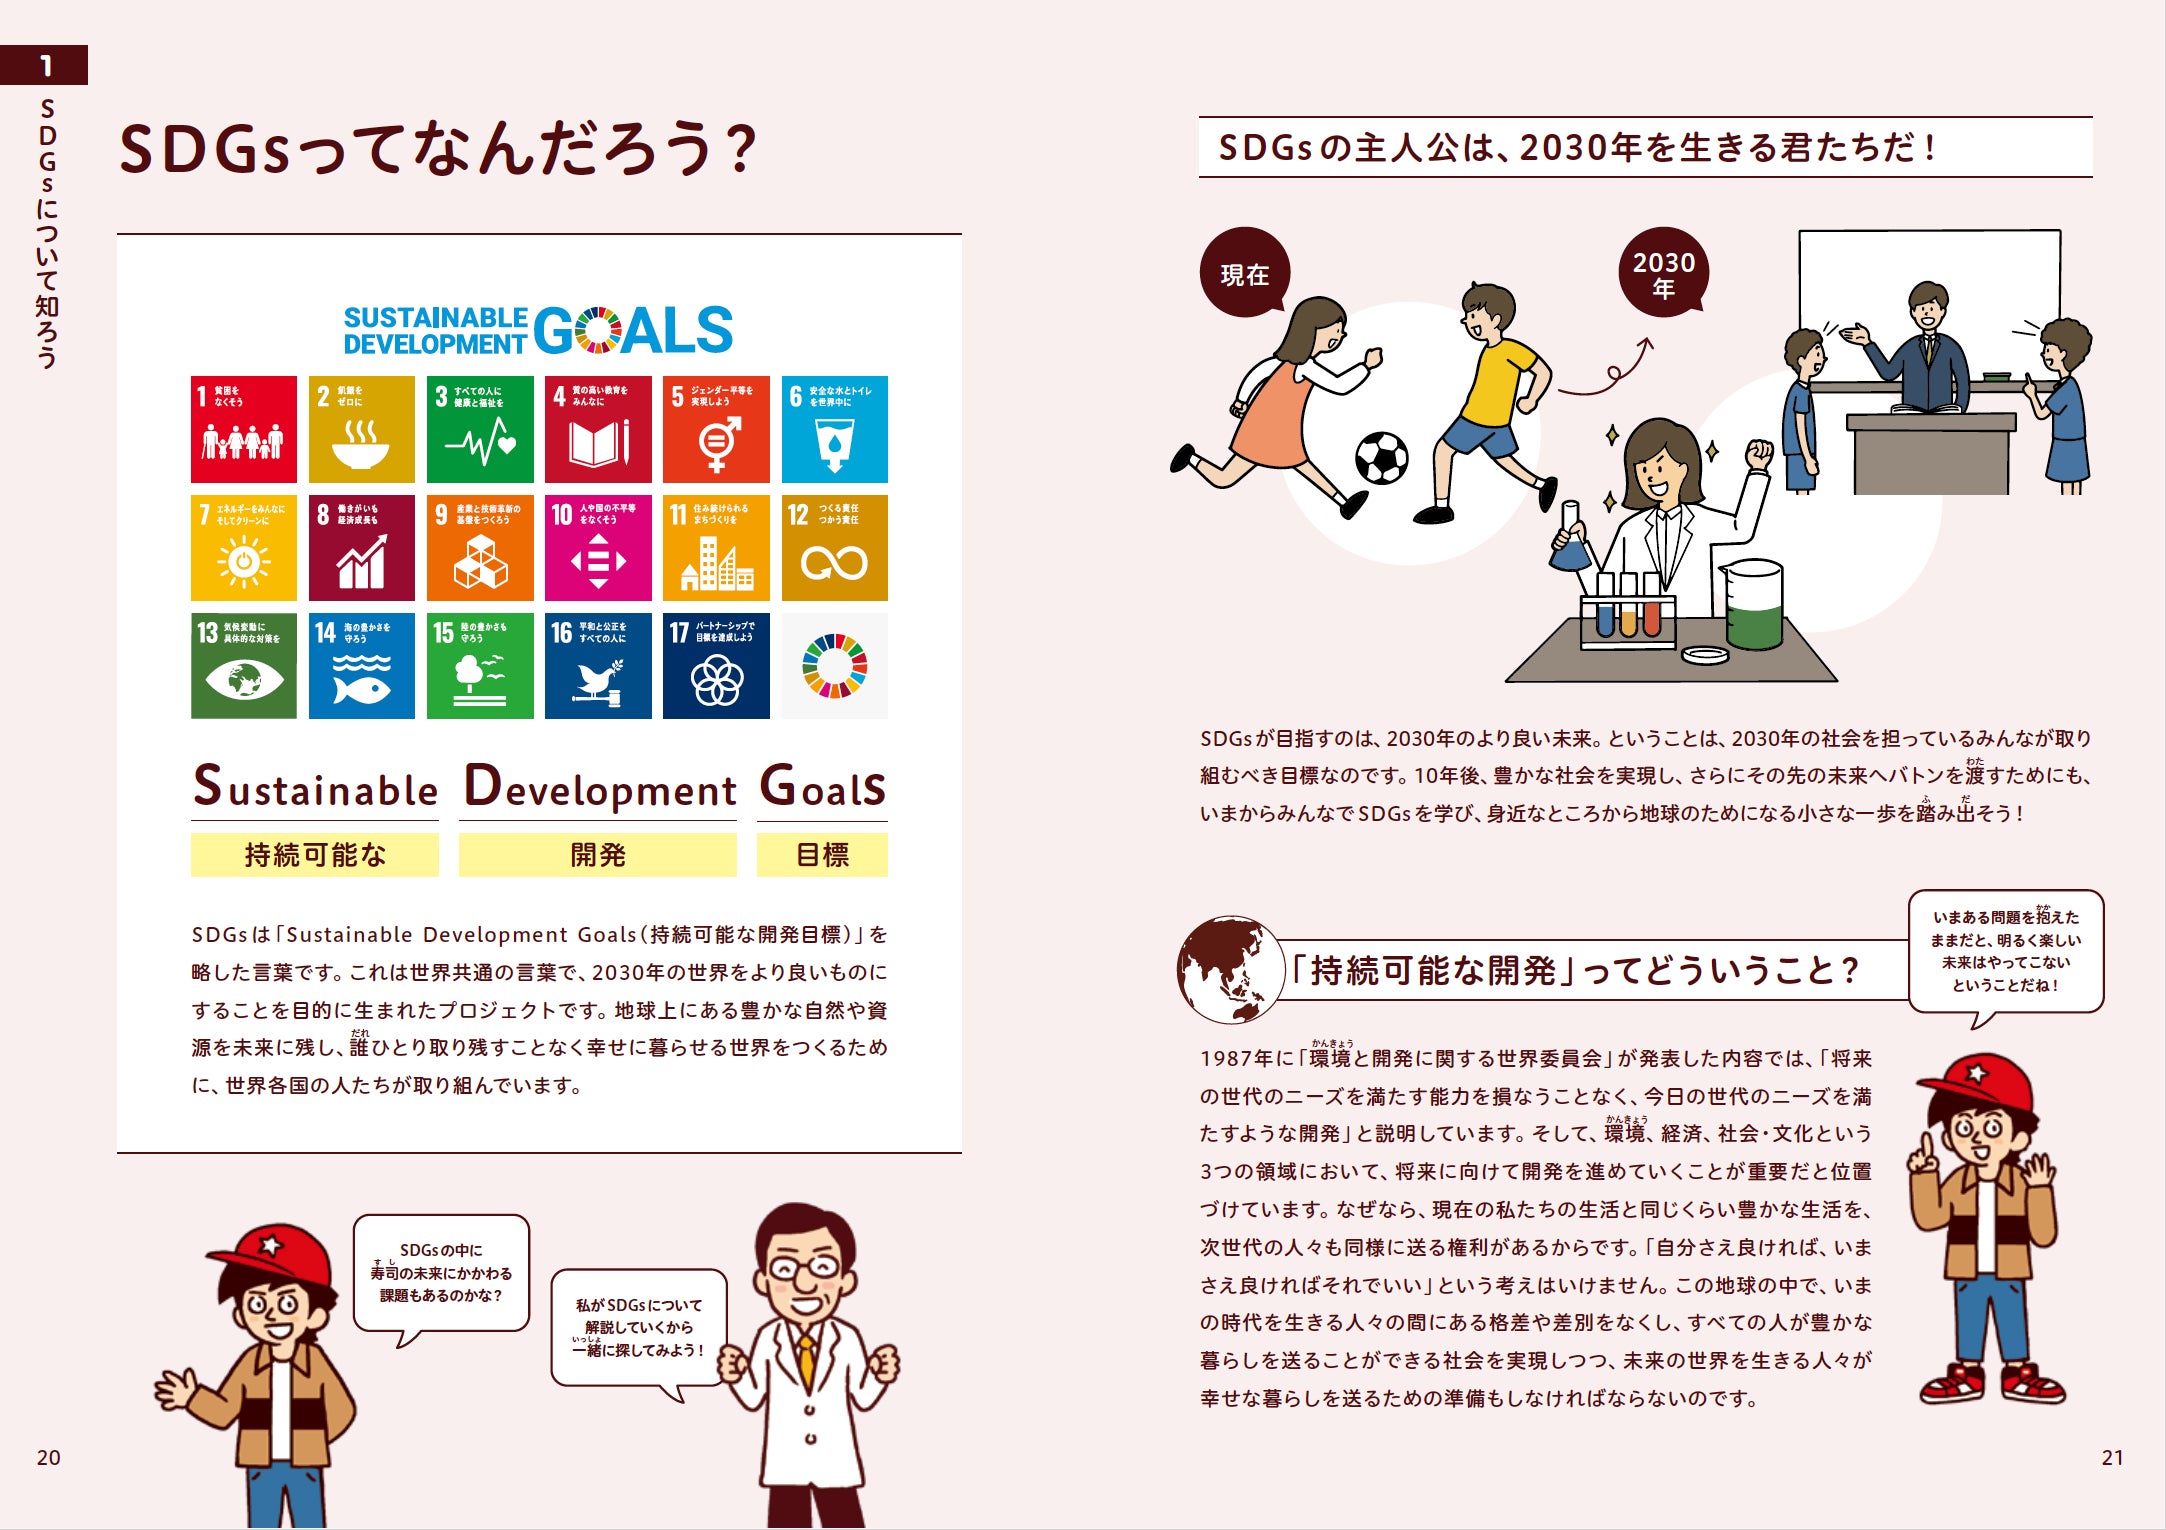 【新刊書籍のご案内】『未来の授業 SDGs×ライフキャリア探究BOOK』発売